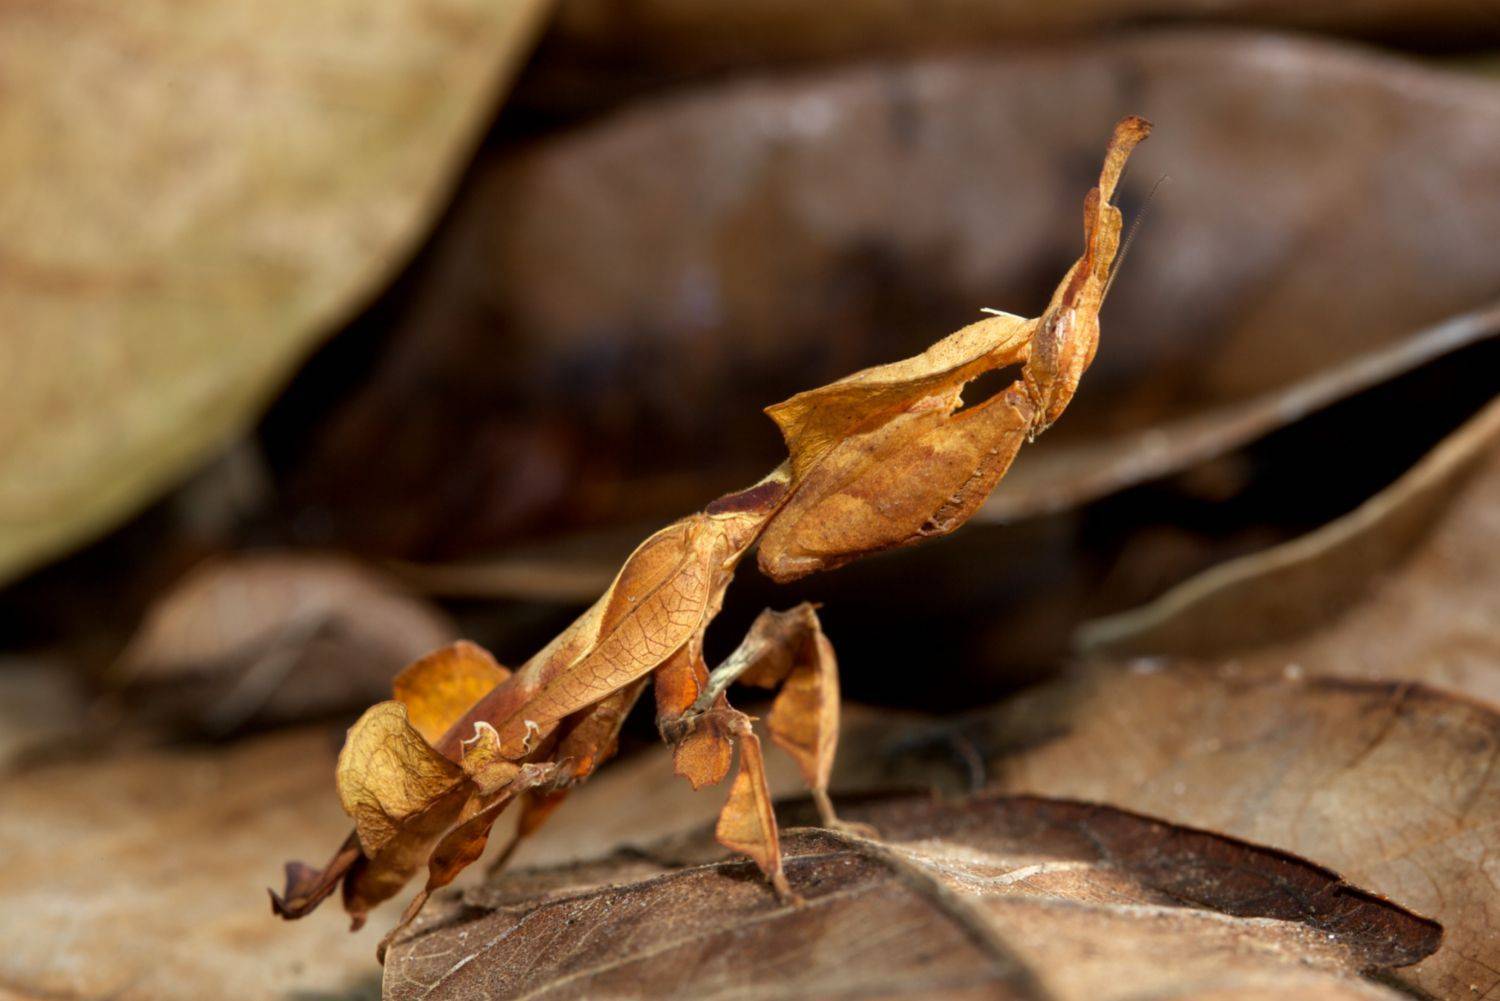 枯叶螳螂原产马来西亚,外形酷似一片枯叶,类似进行拟态的生物还有